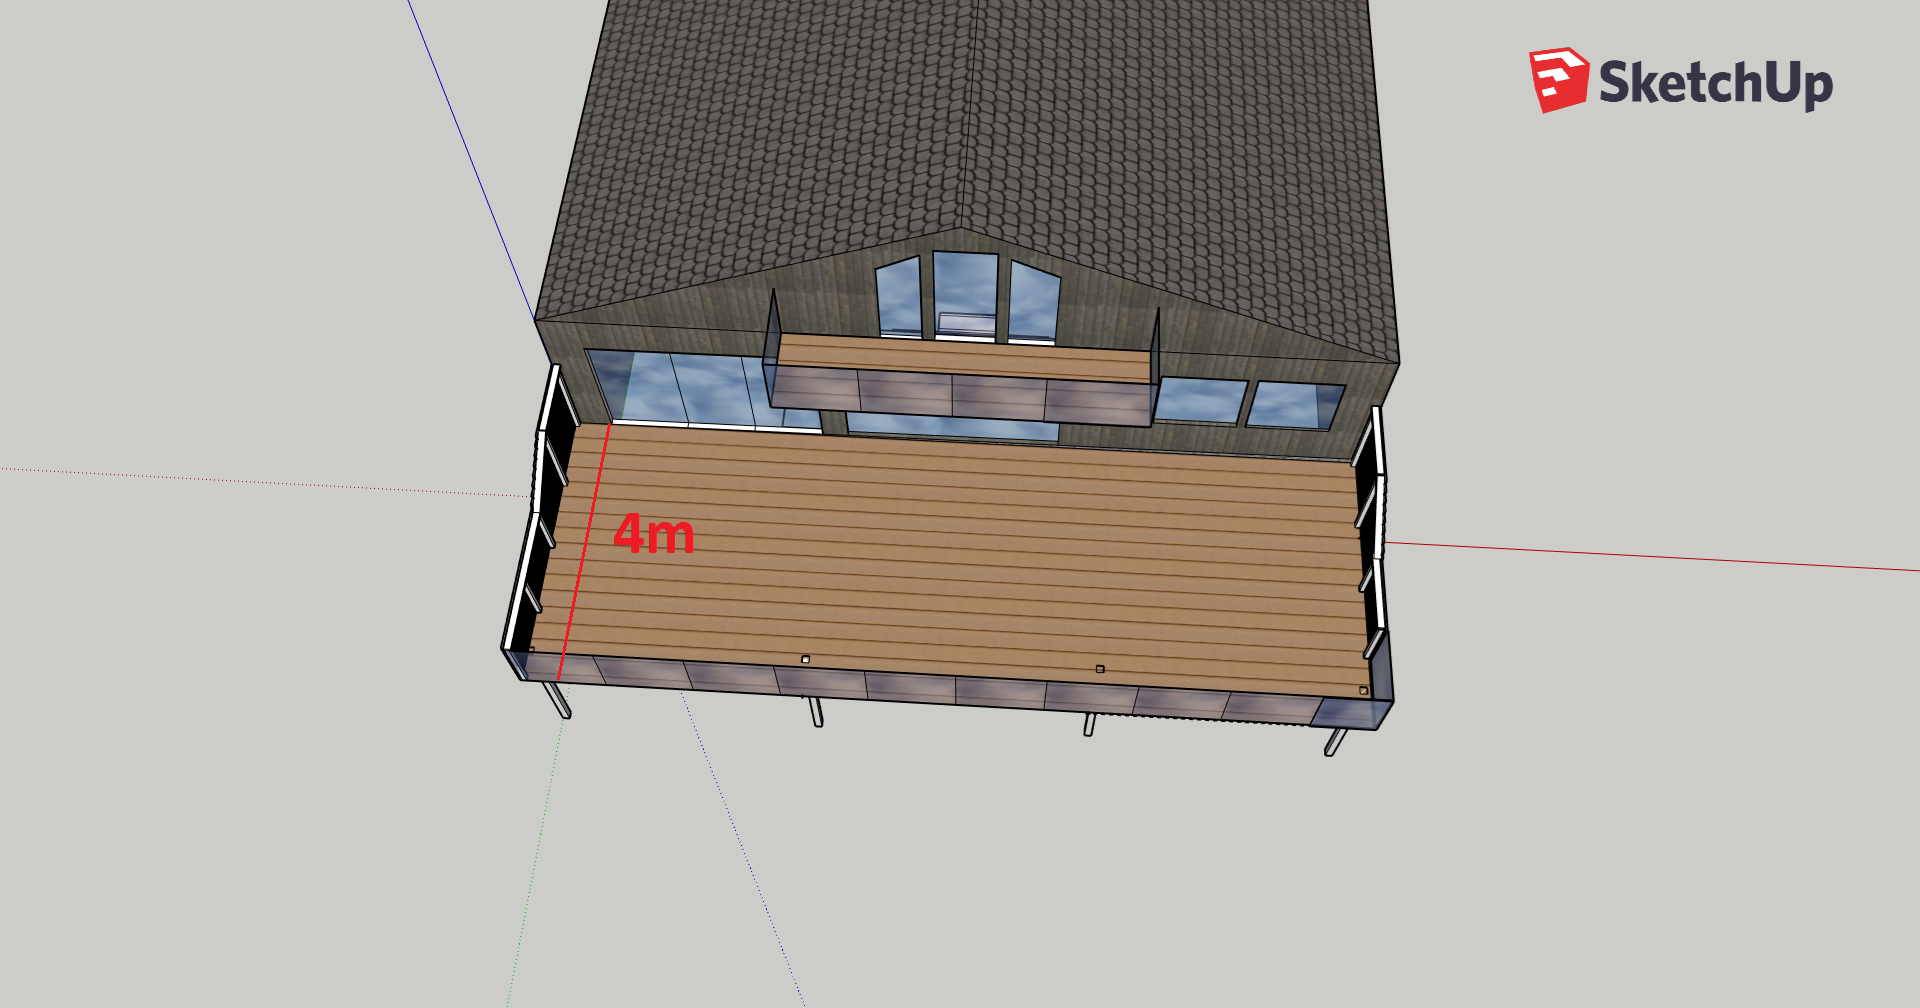 Bygge terrasse. 4m avstand mellom søyler, mulig? - Q:\4. Prosess\5. Lab\Ben\Privat\Terrasse 1.png - benebni89